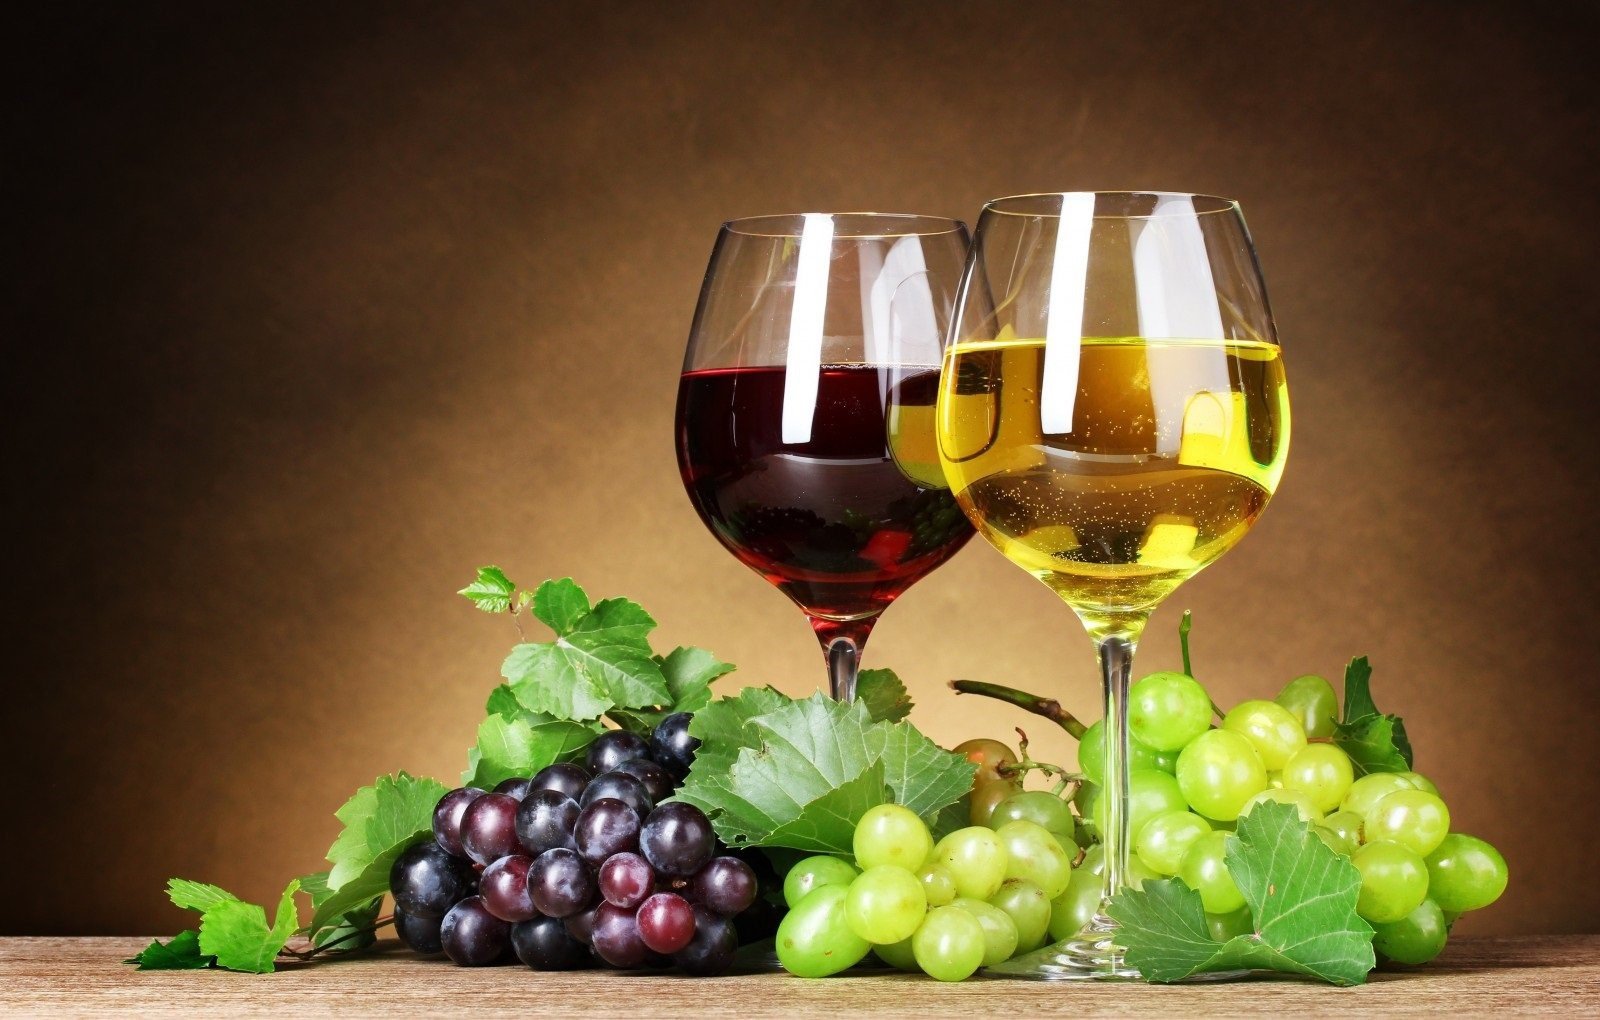 80 οινοποιεία στην Κύπρο – Παράγουν περίπου 10 εκατ. λίτρα κρασί τον χρόνο